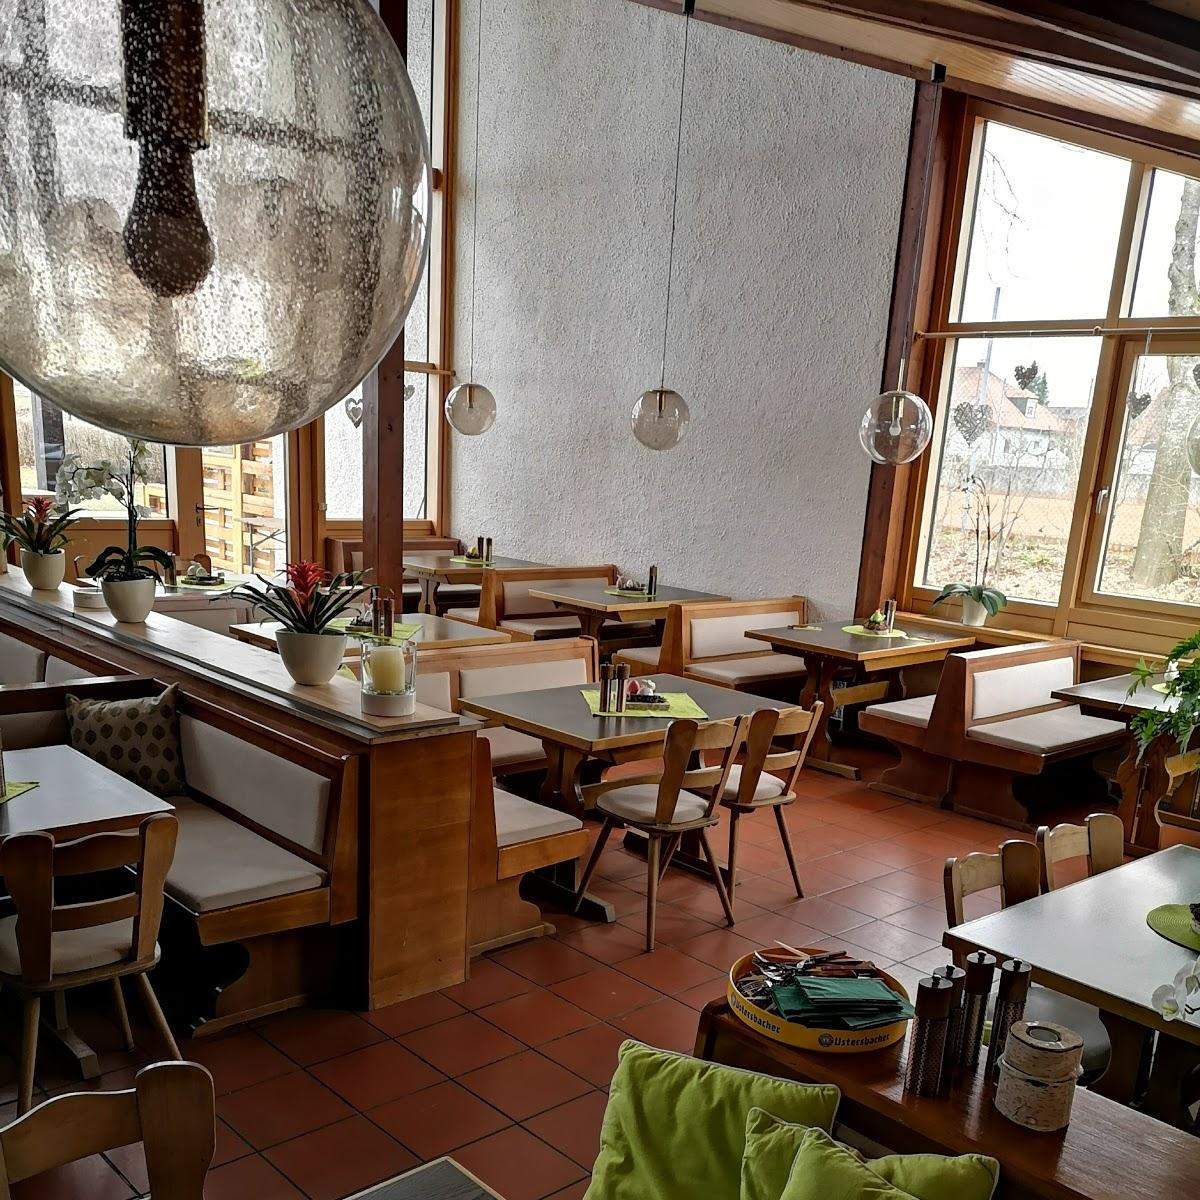 Restaurant "Neue Mühle" in  Burtenbach